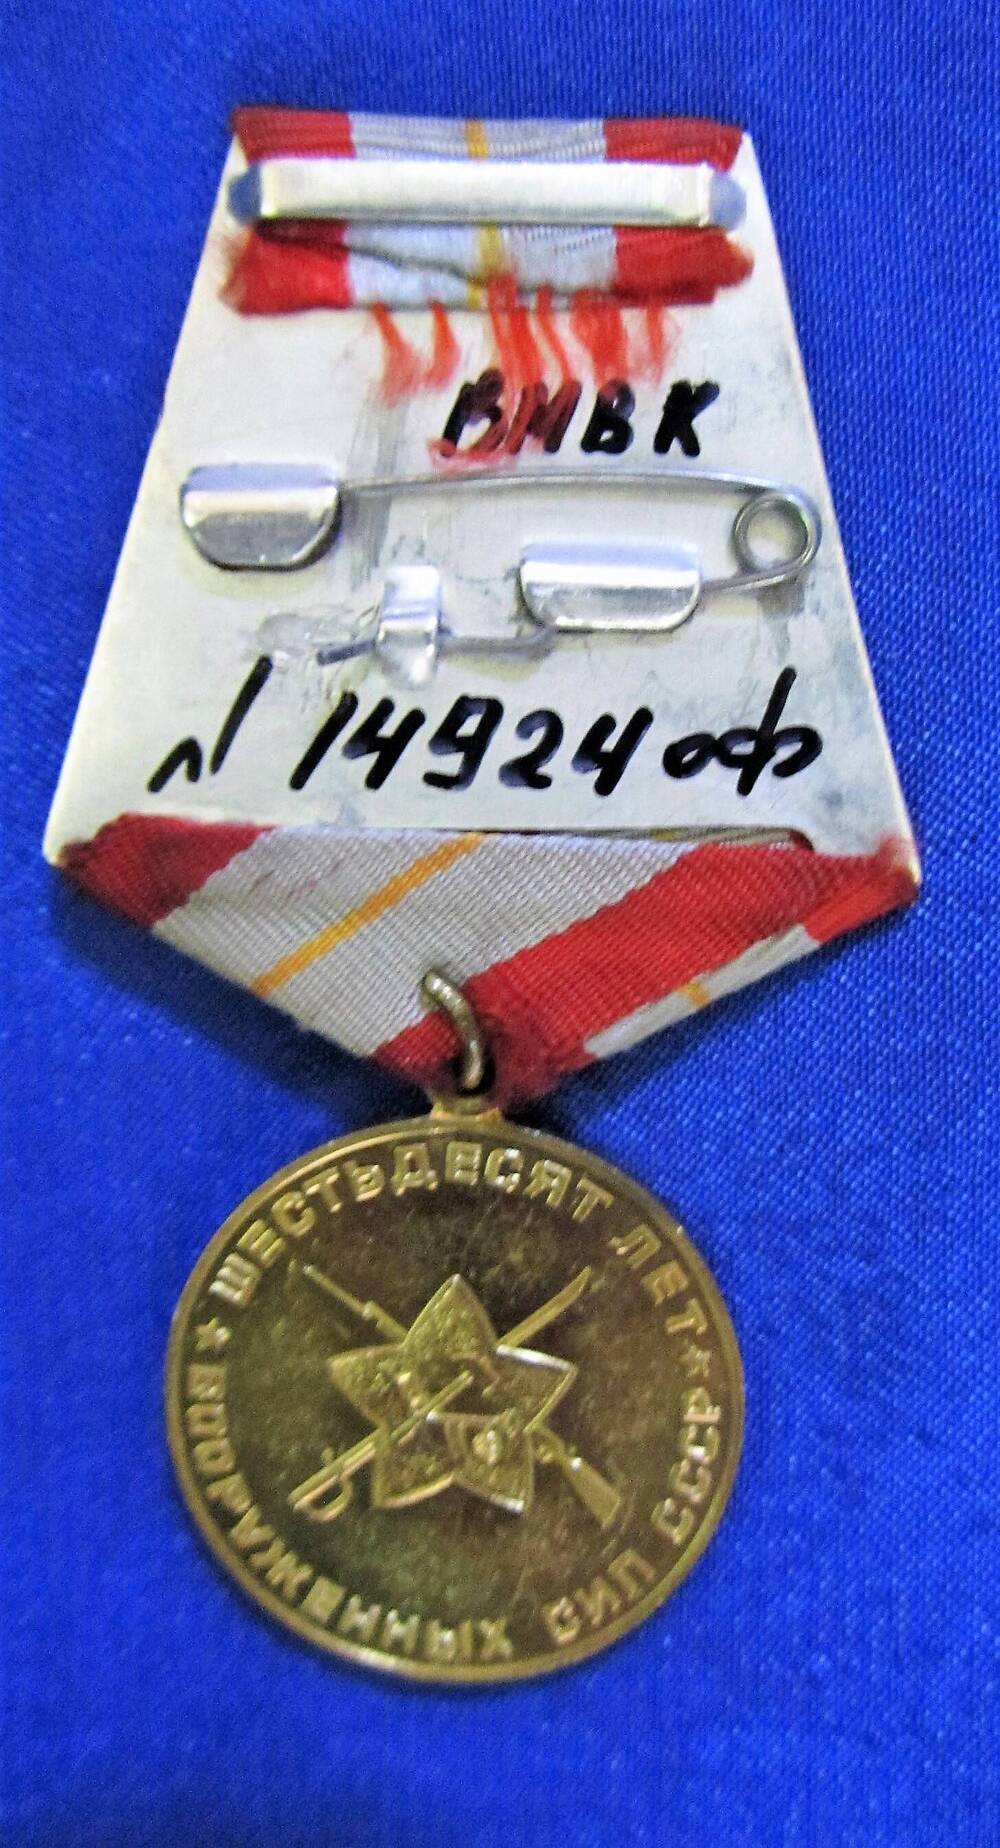 Медаль юбилейная «60 лет Вооружённых сил СССР». Принадлежала Савенко Галине Ивановне, участнице Великой Отечественной войны.